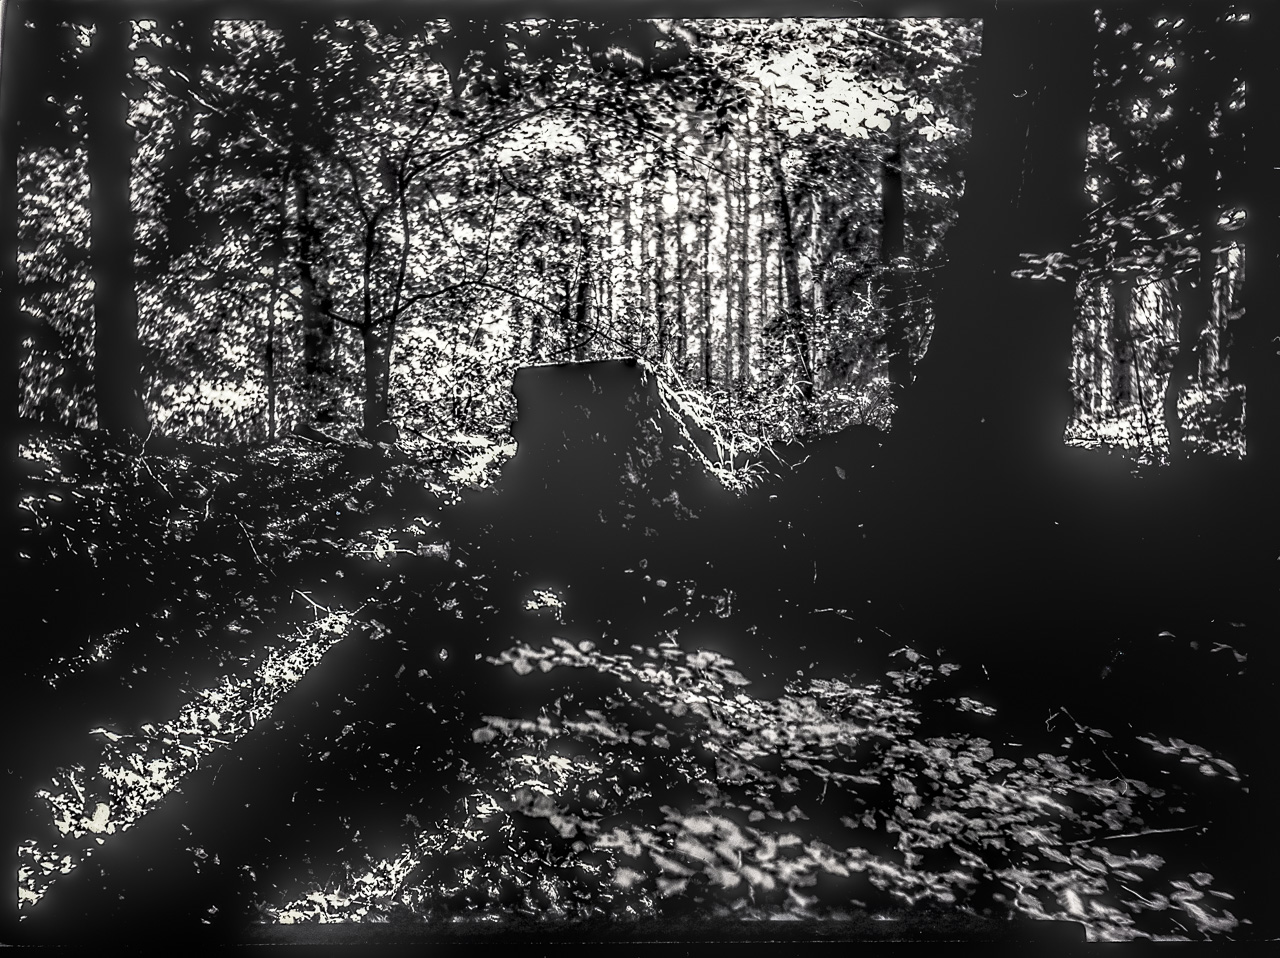 Waldszene in hartem GegenLicht, schwarzweiß. Ein BaumStumpf auf einem Hügel wirft schräge Schatten